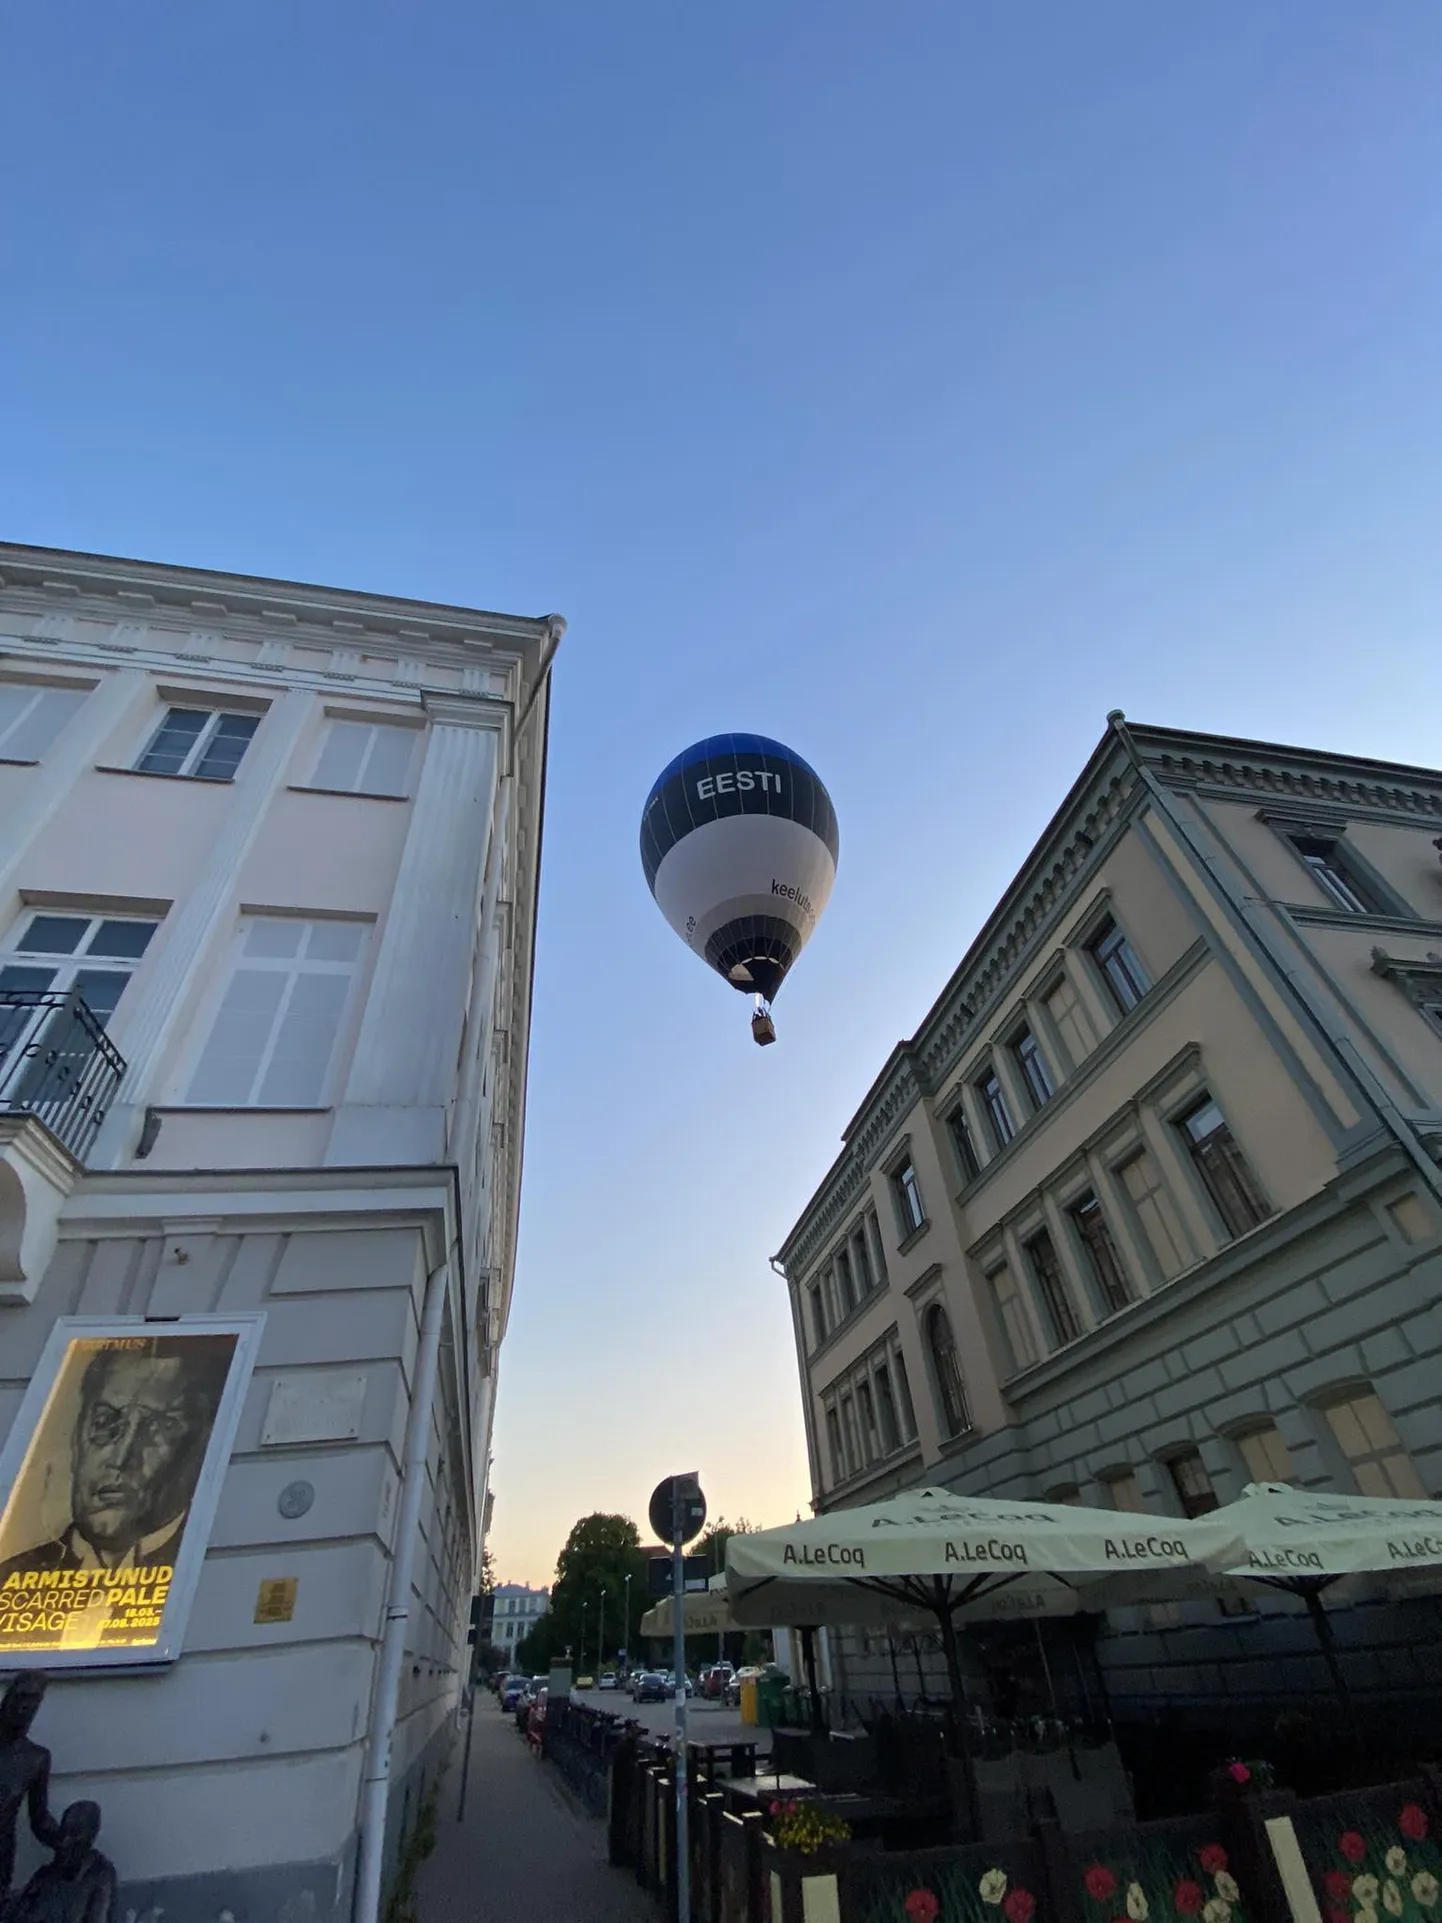 Sinimustvalge kuumaõhupall 11. juuni varahommikul Tartu südalinna majade kohal.